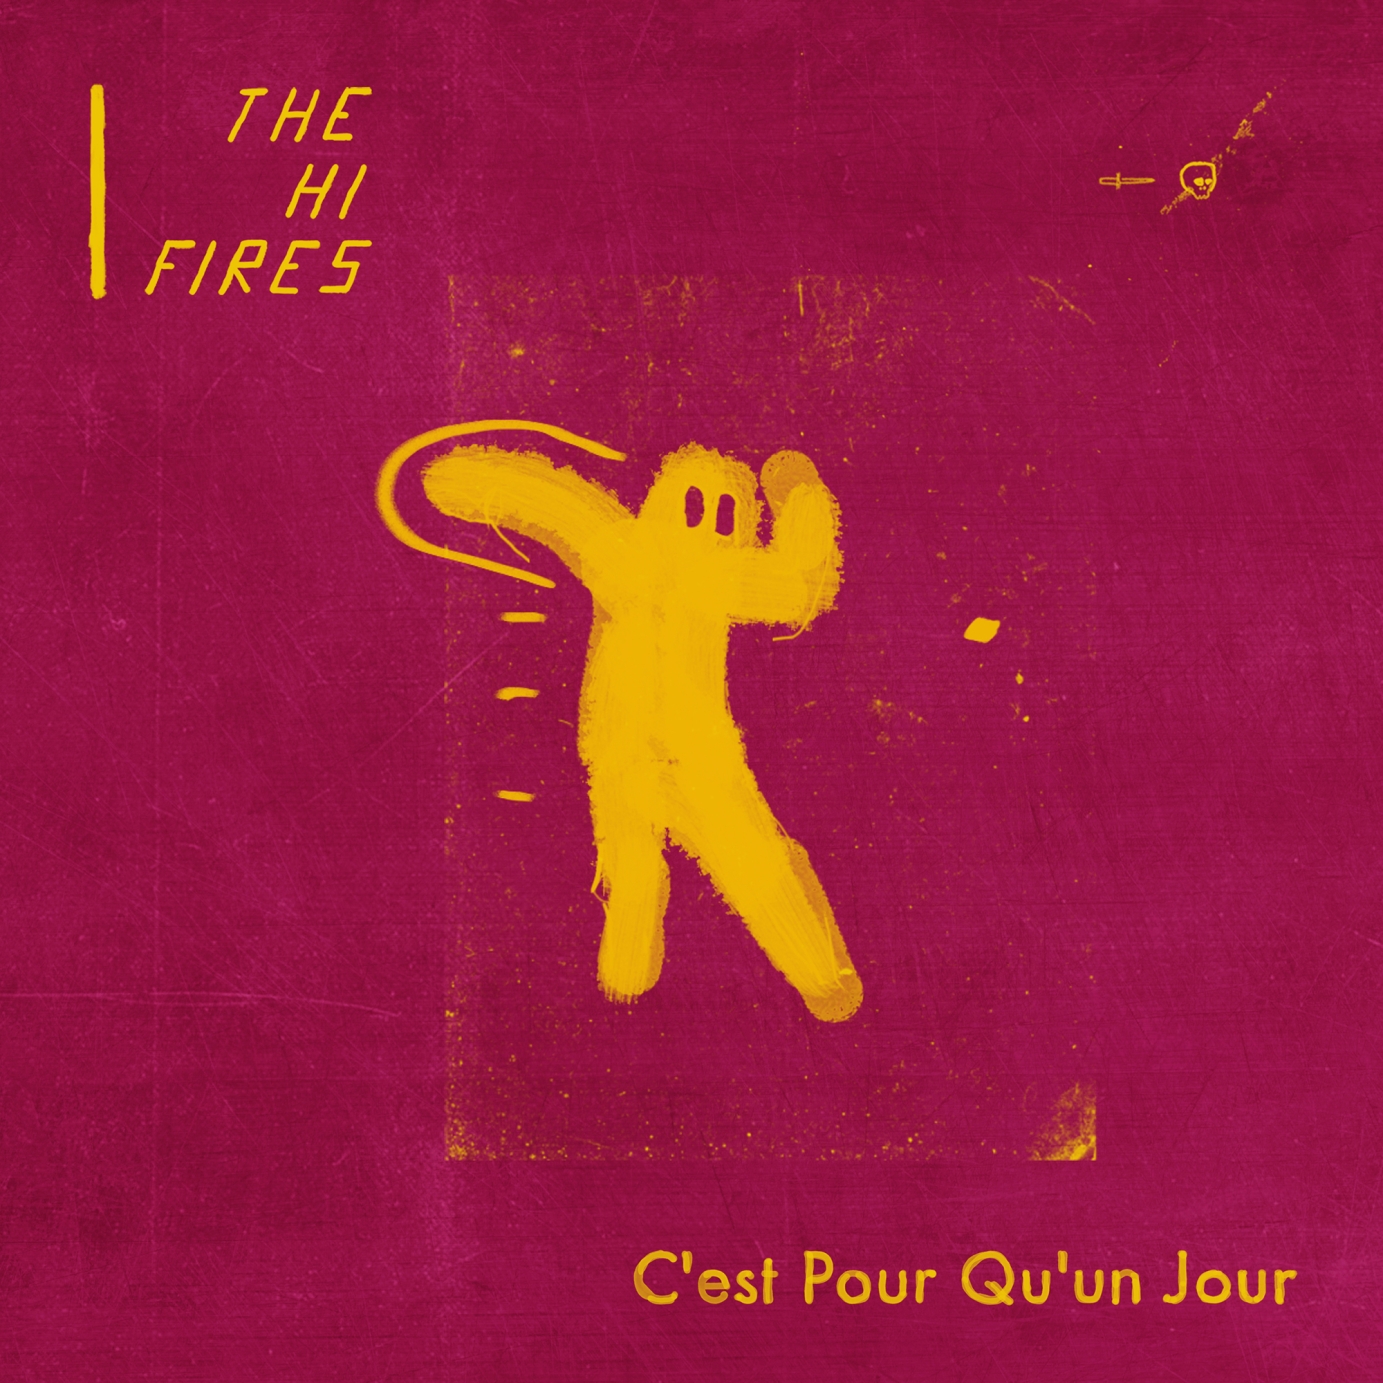 The-Hi-Fires-cover-C'est-Pour-Qu'un-Jour.jpg